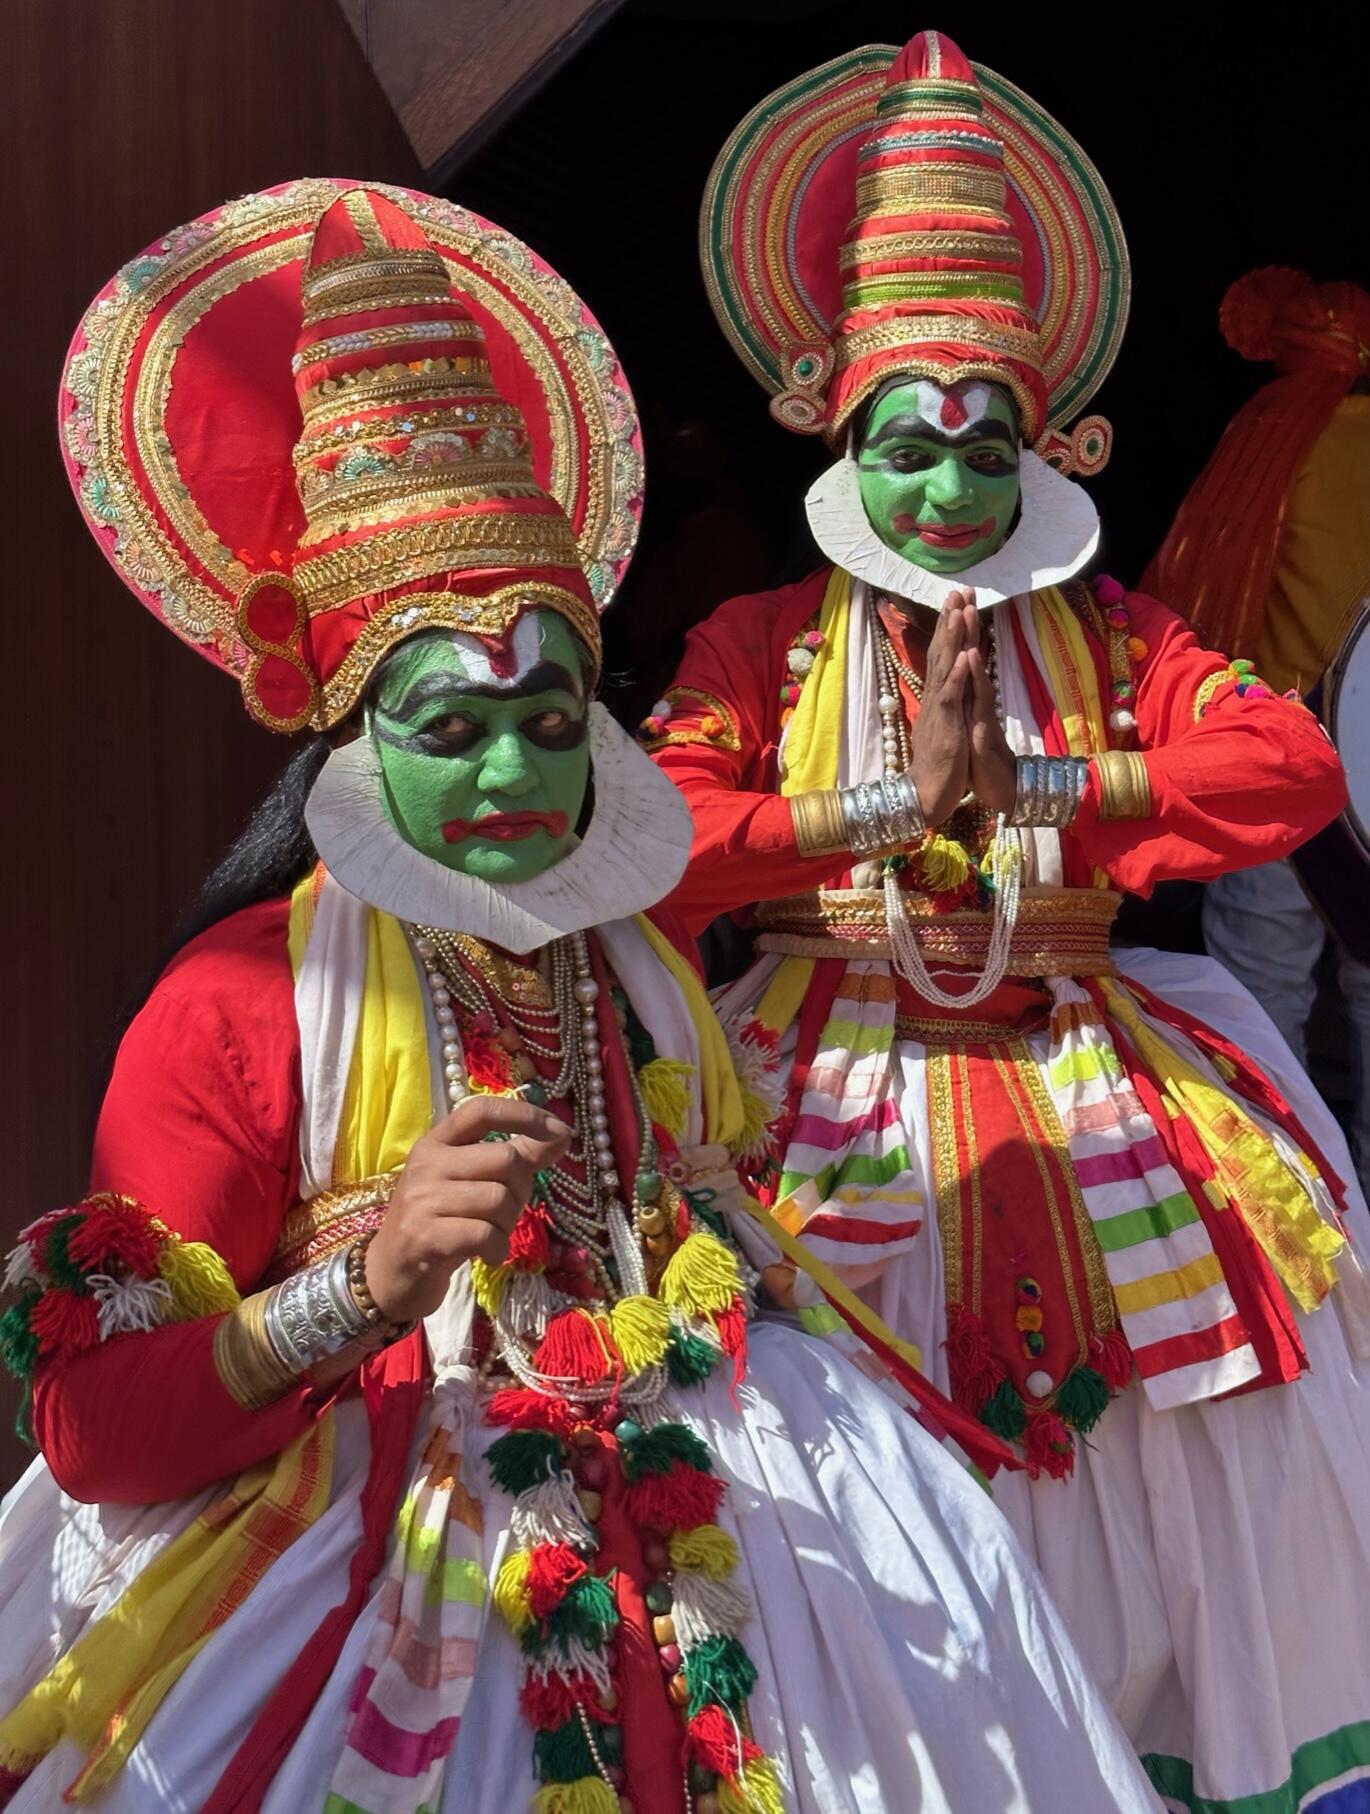 Mumbai Mela performers